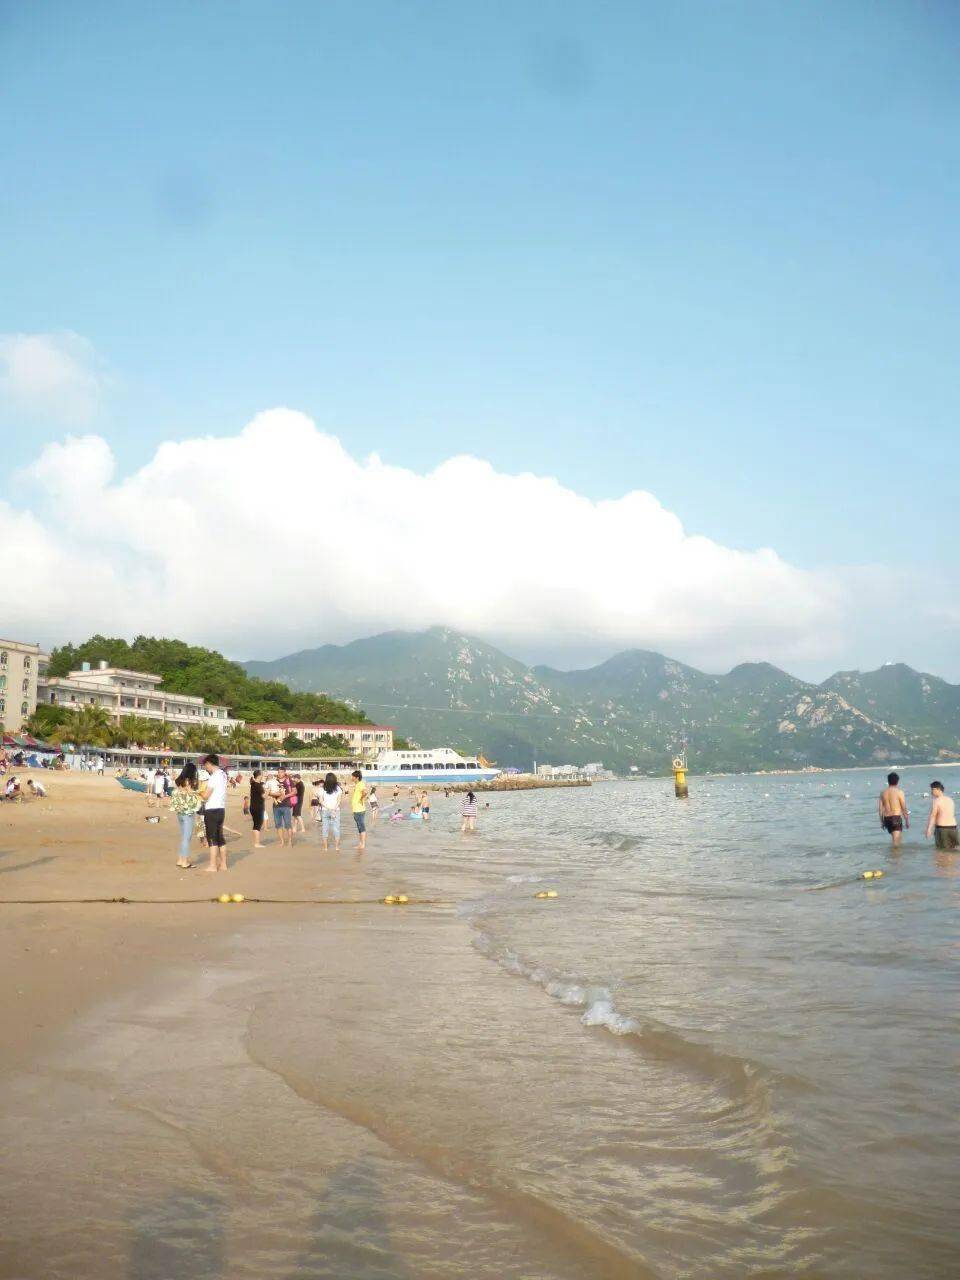 这个暑假,让我们一起去江门看海,玩水,感受夏天!